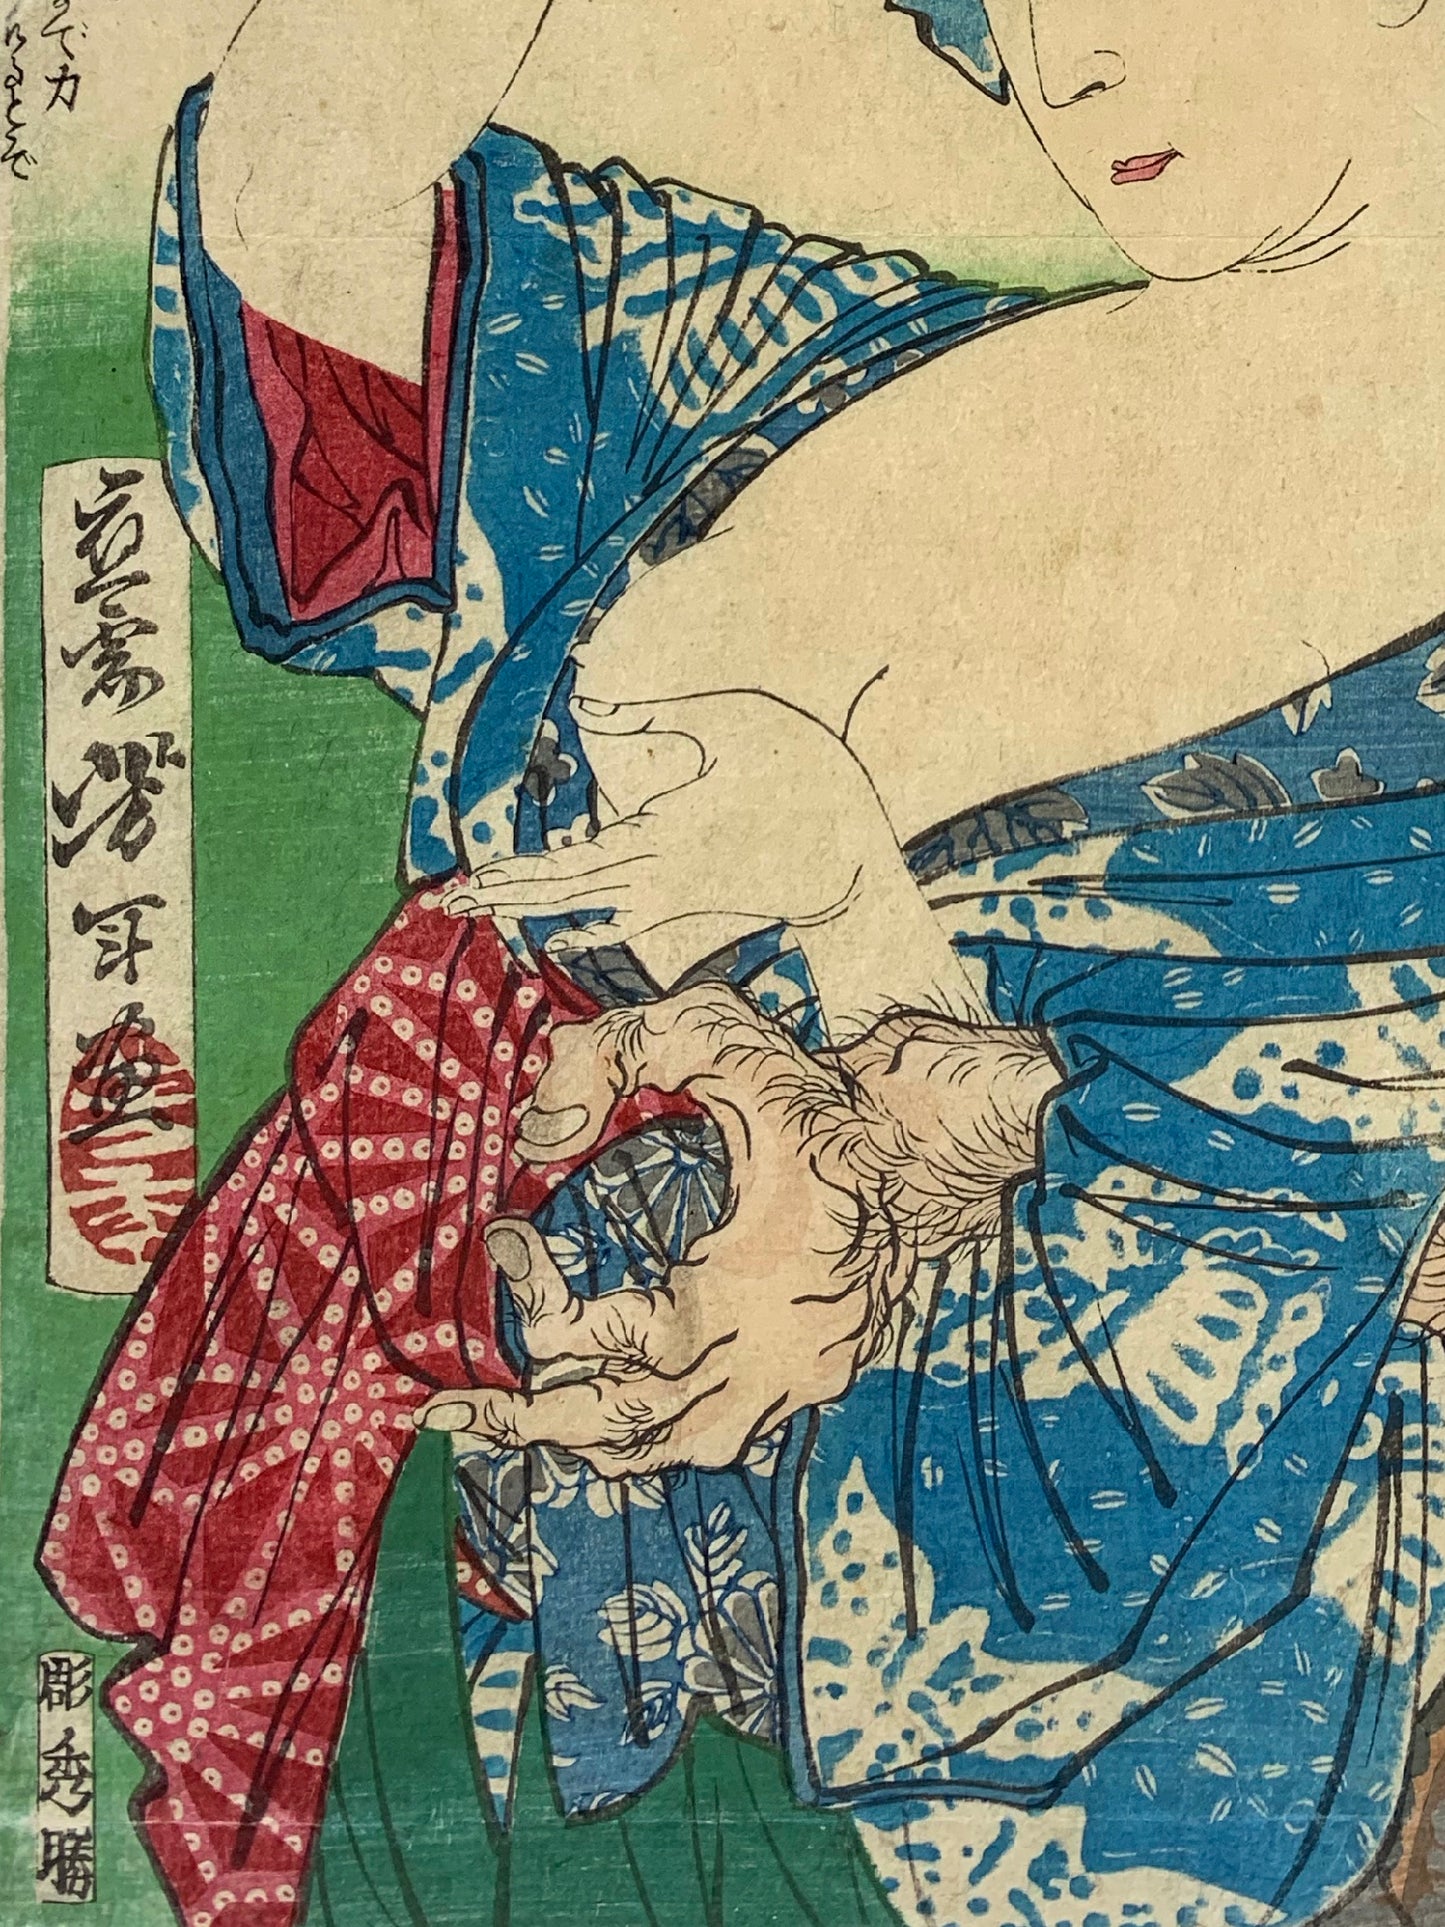 estampe japonaise une femme serre le bras dans homme voulant toucher son sein dénudé, les mains